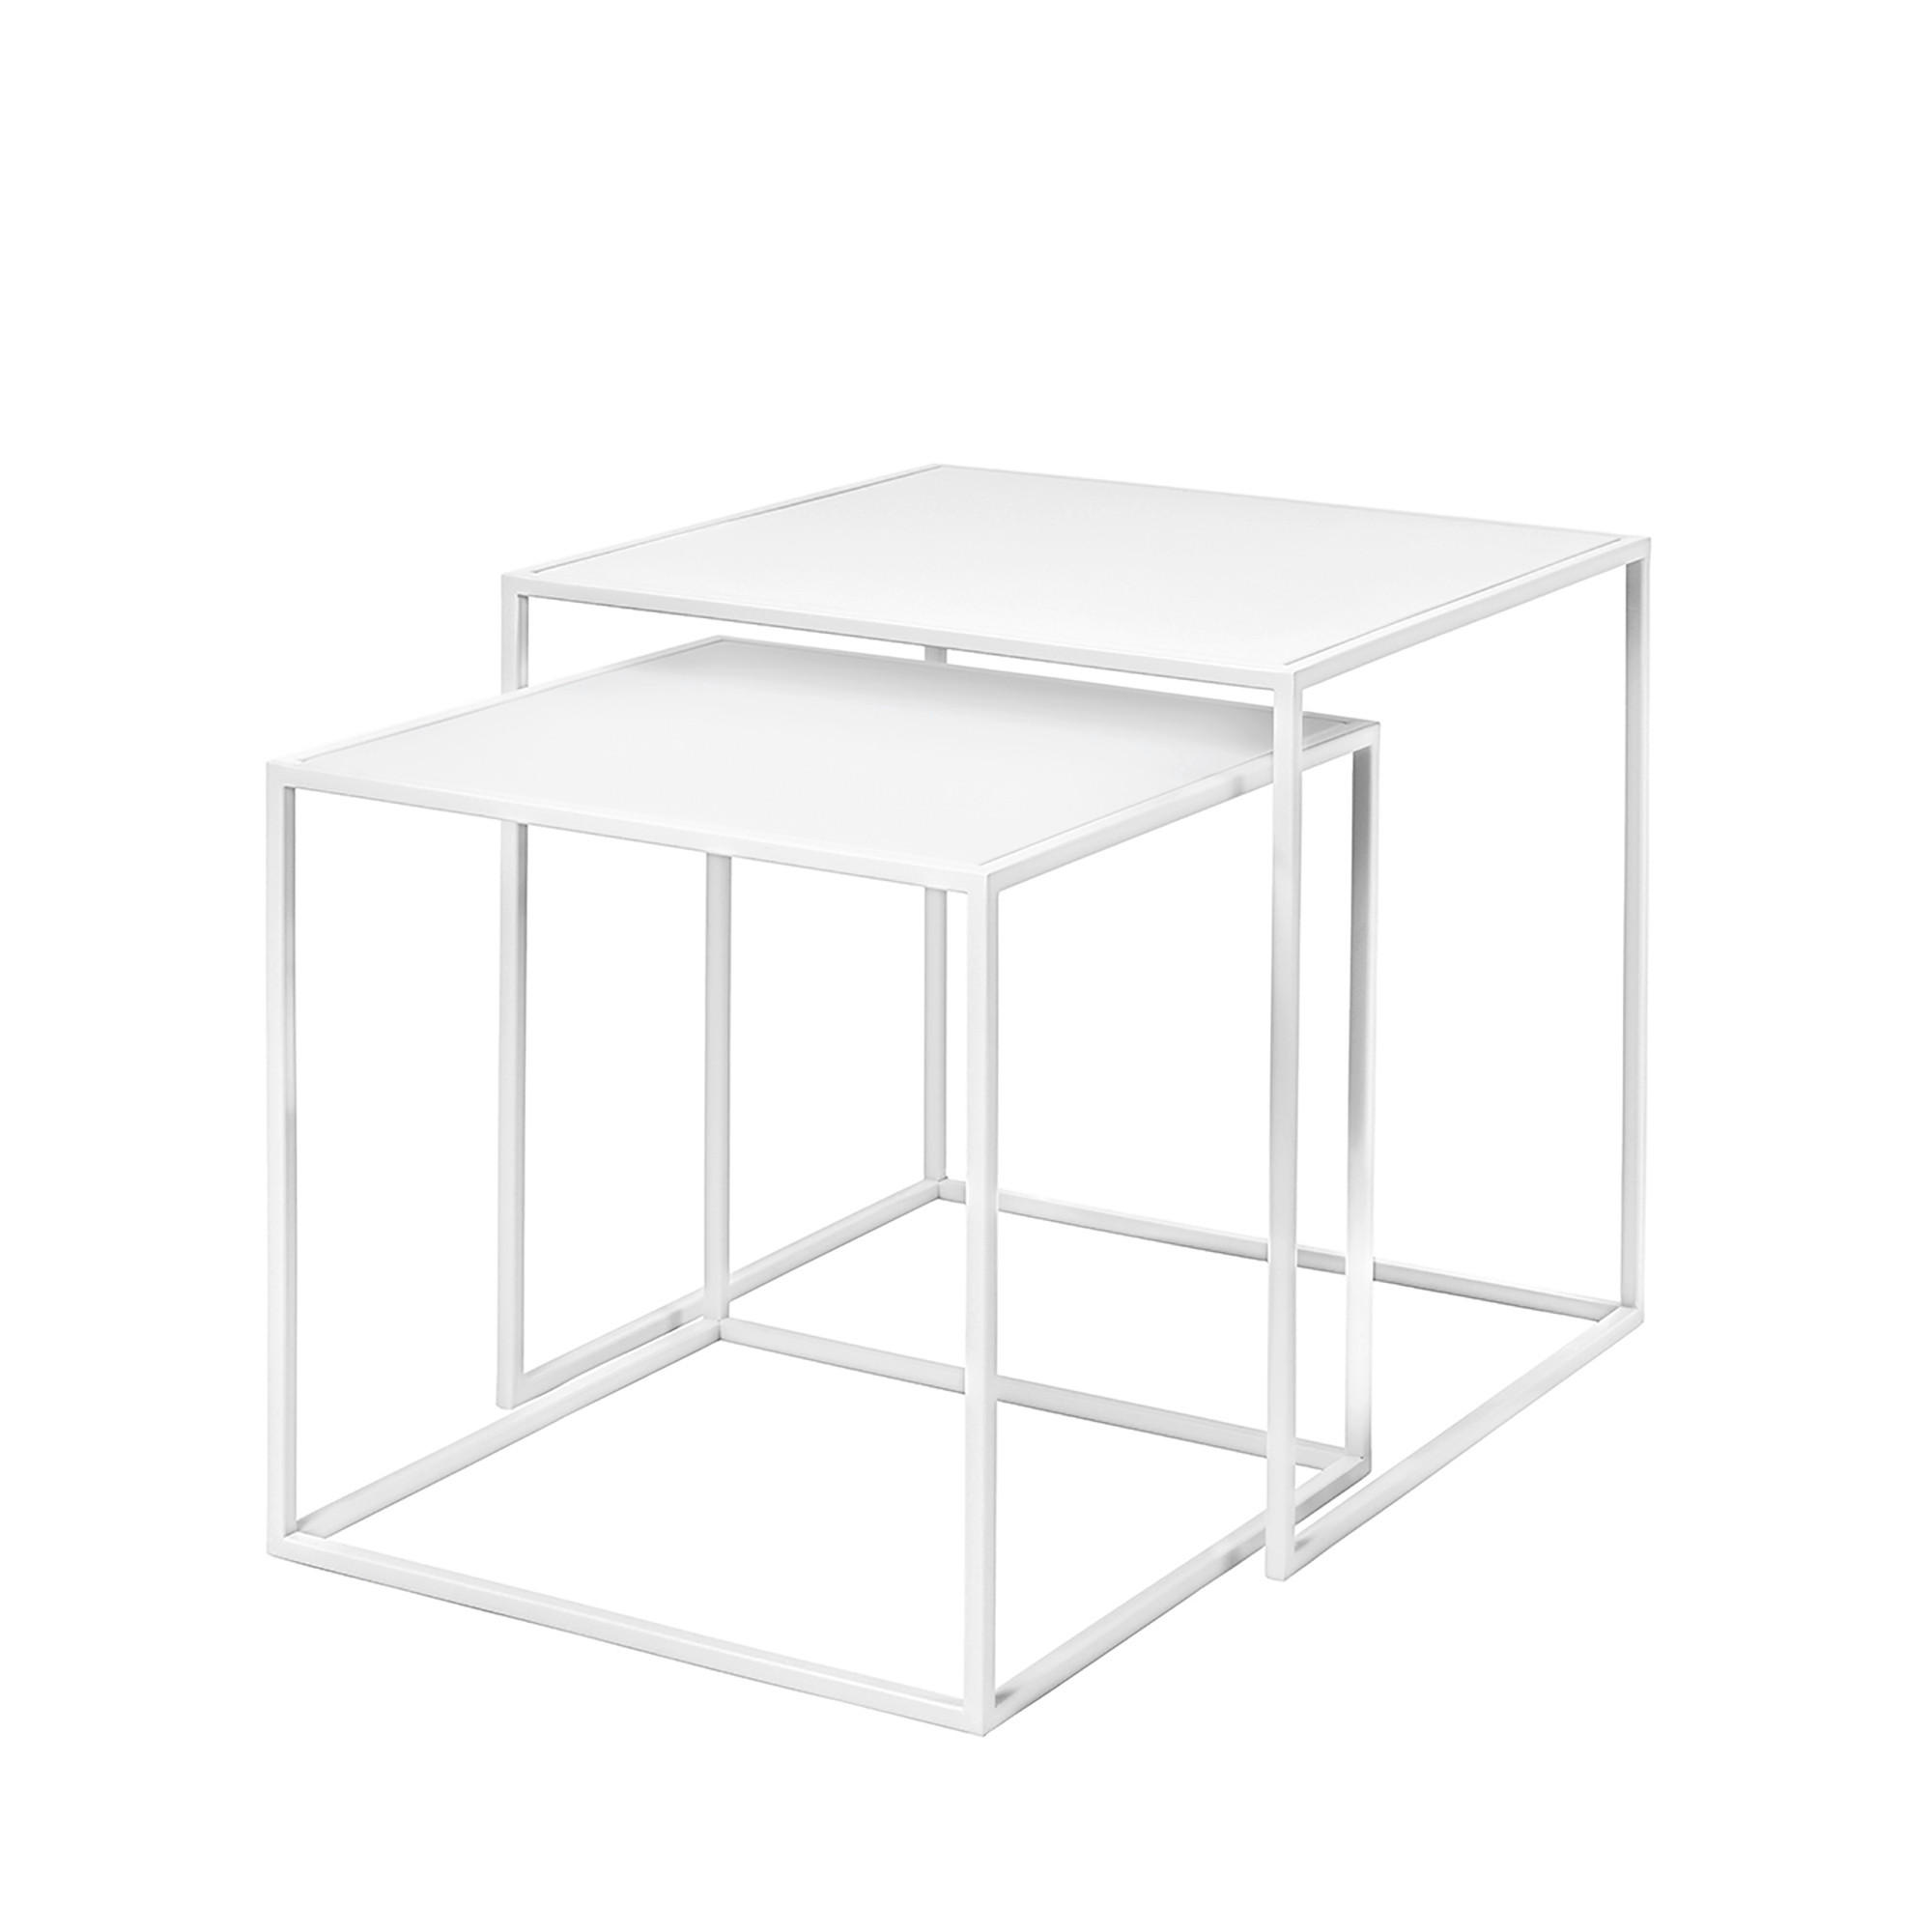 BEISTELLTISCHSET quadratisch Weiß  - Weiß, Design, Metall (40/40/40cm) - Blomus